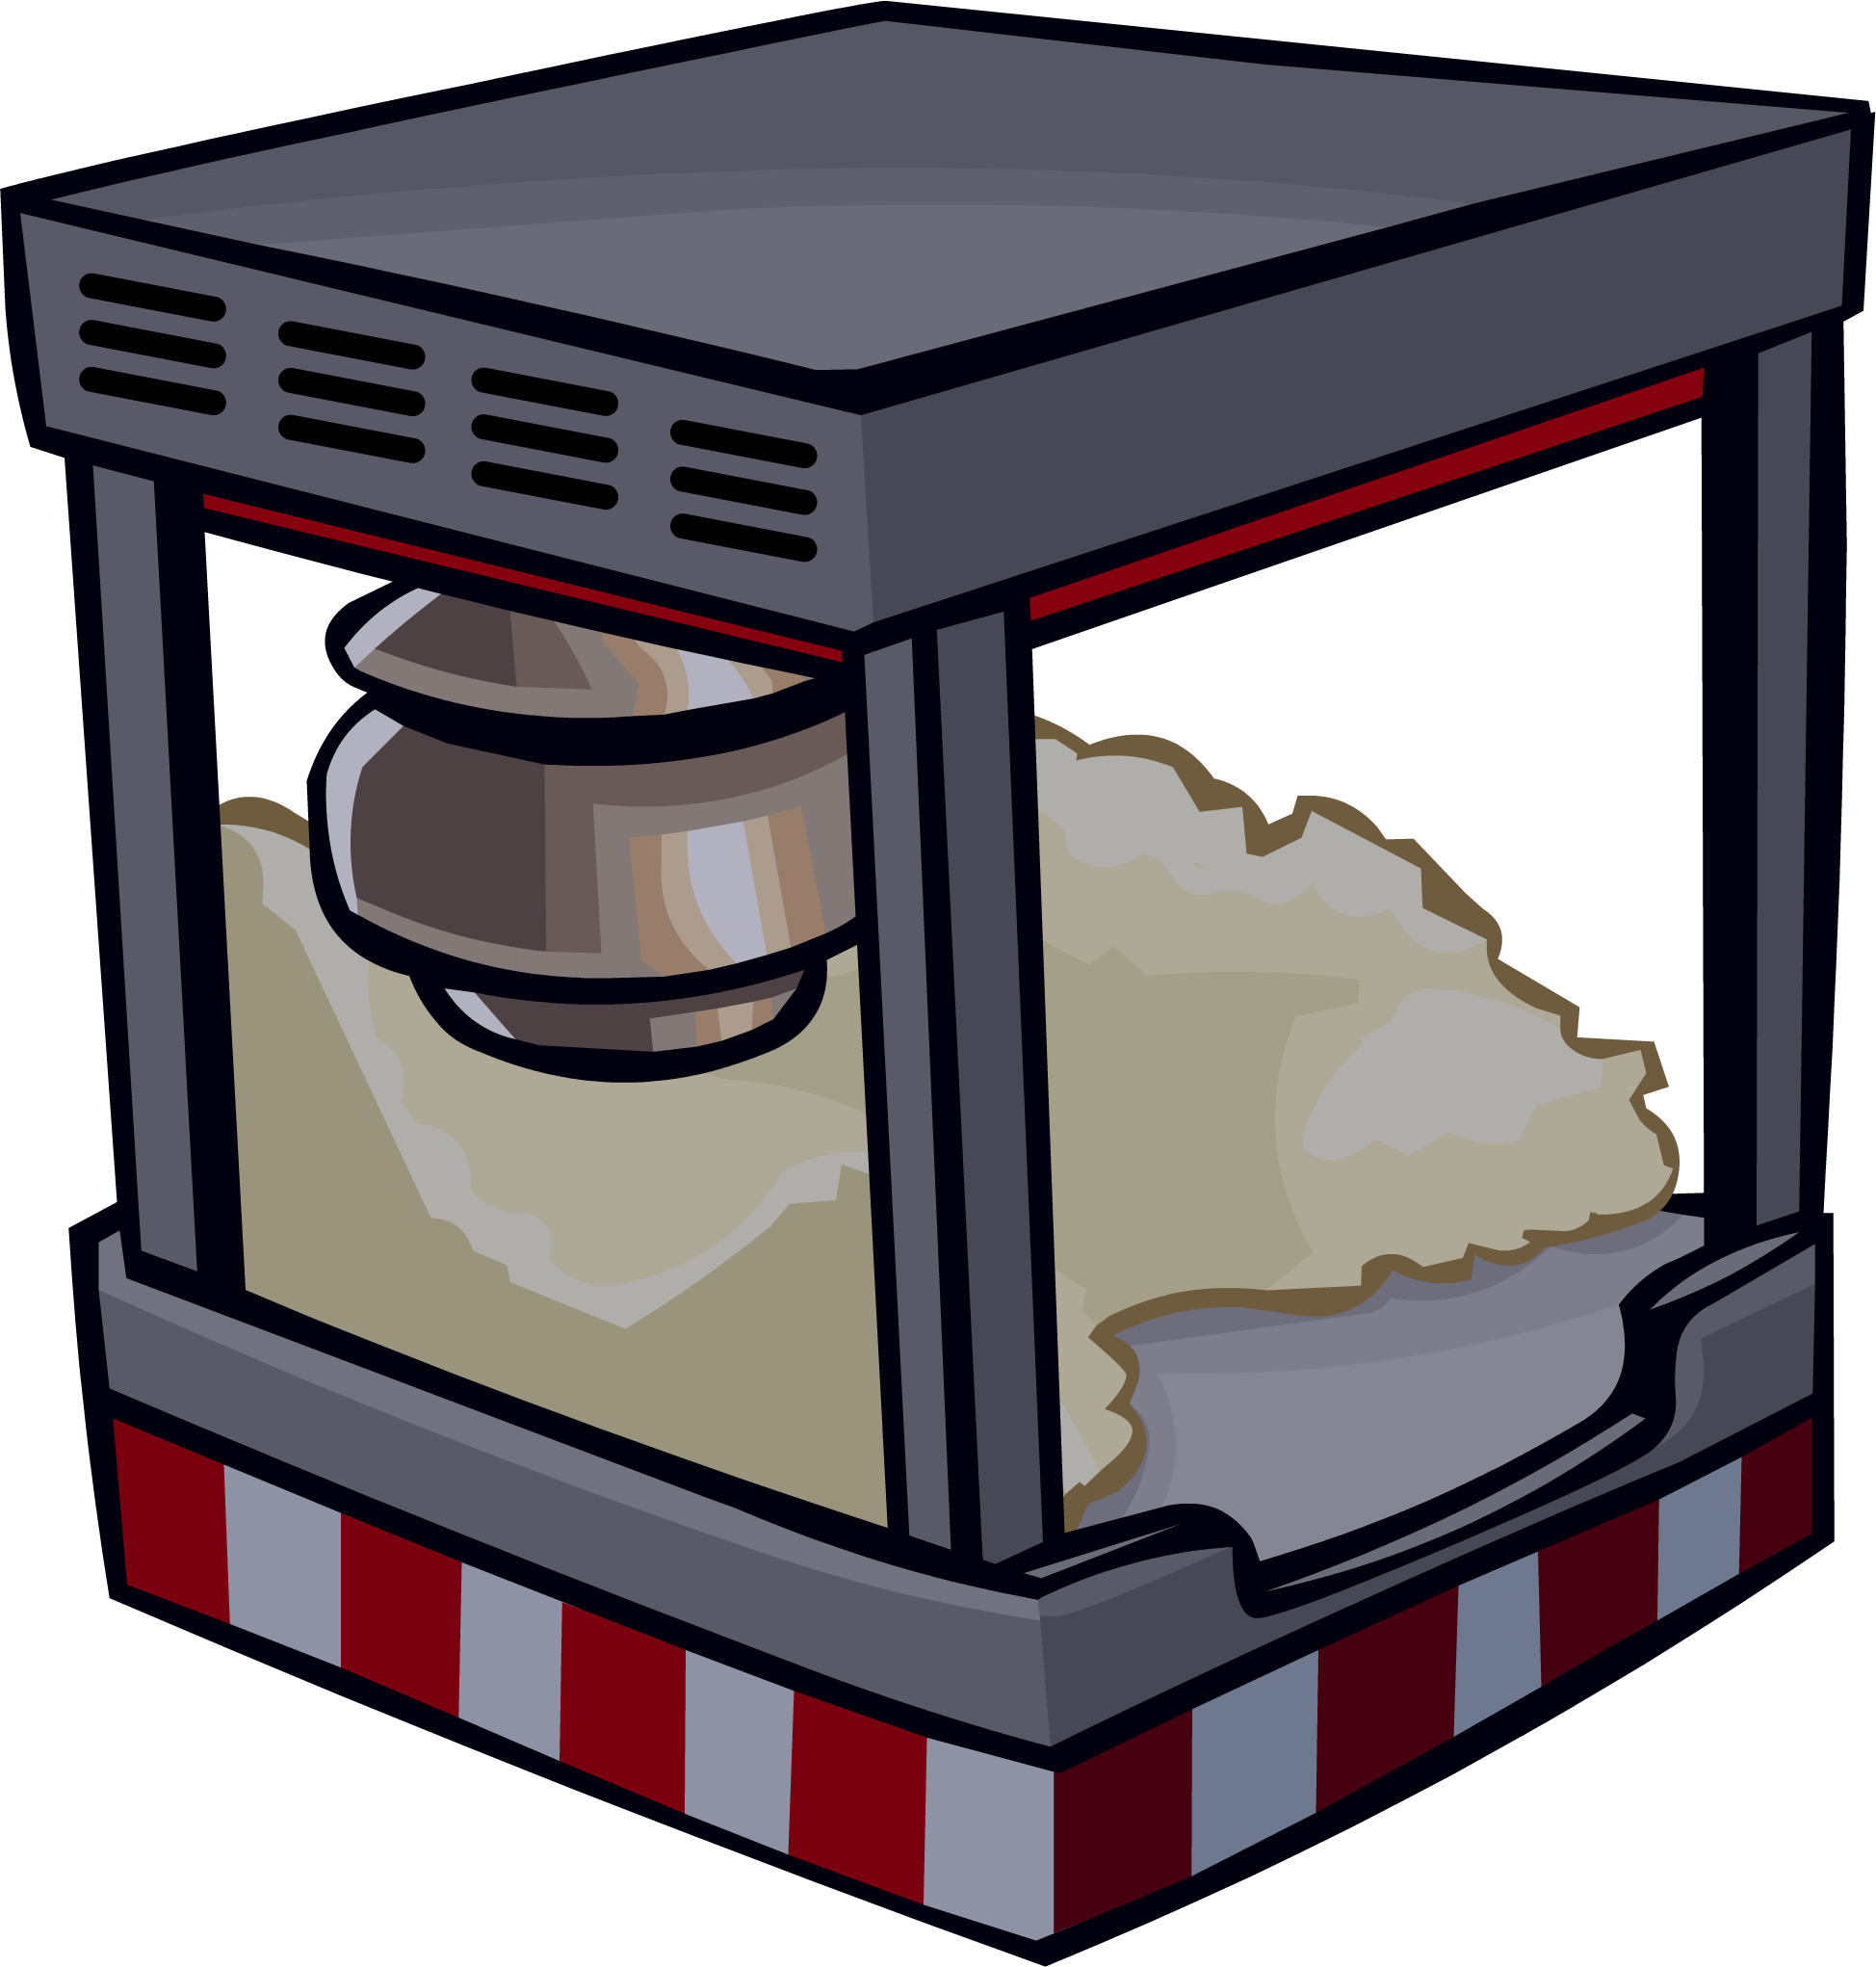 Popcorn Machine | Club Penguin Wiki | FANDOM powered by Wikia